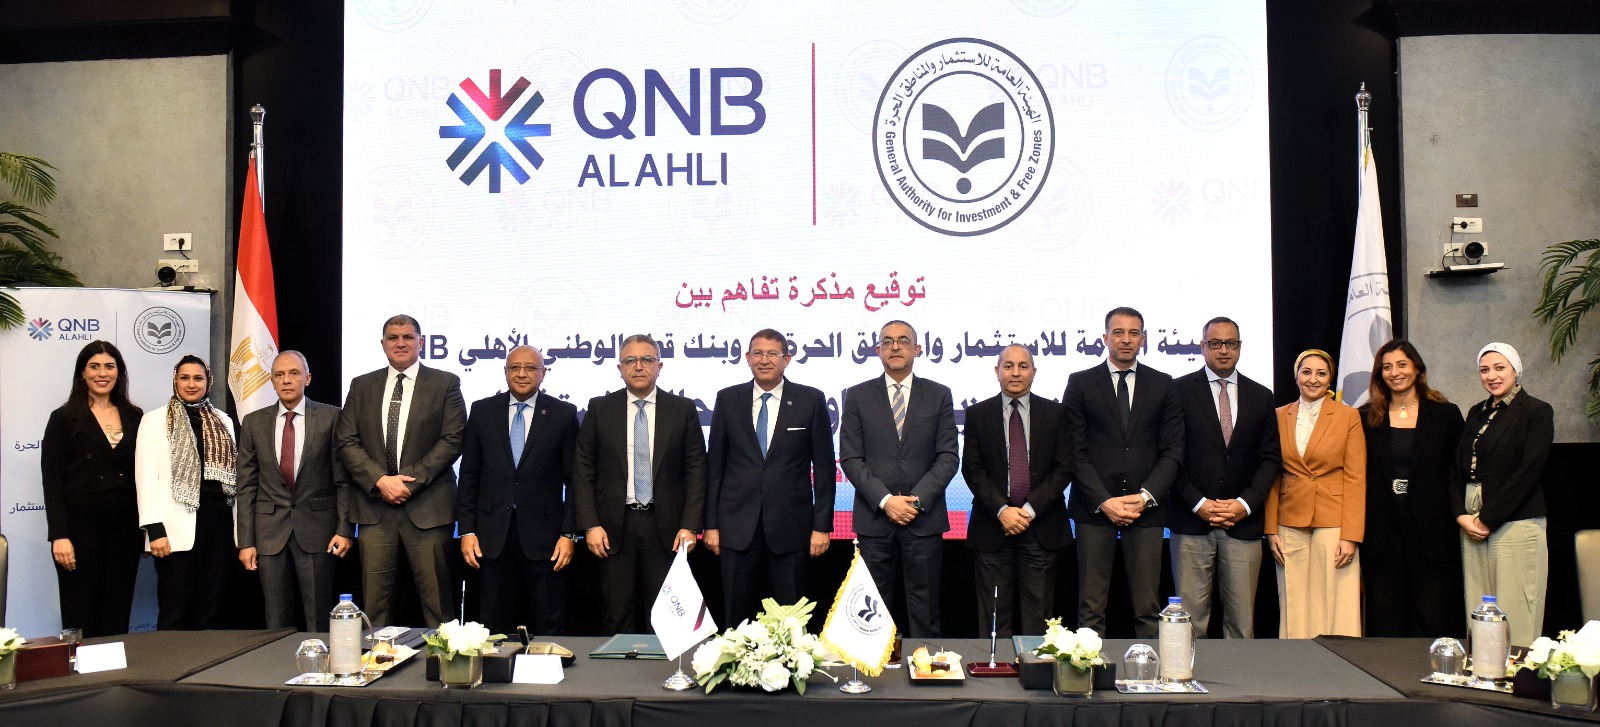 «قطر الوطني» قناص الفرص.. QNB يوقع اتفاقية مع هيئة الاستثمار لترويج الاستثمار في مصر 2